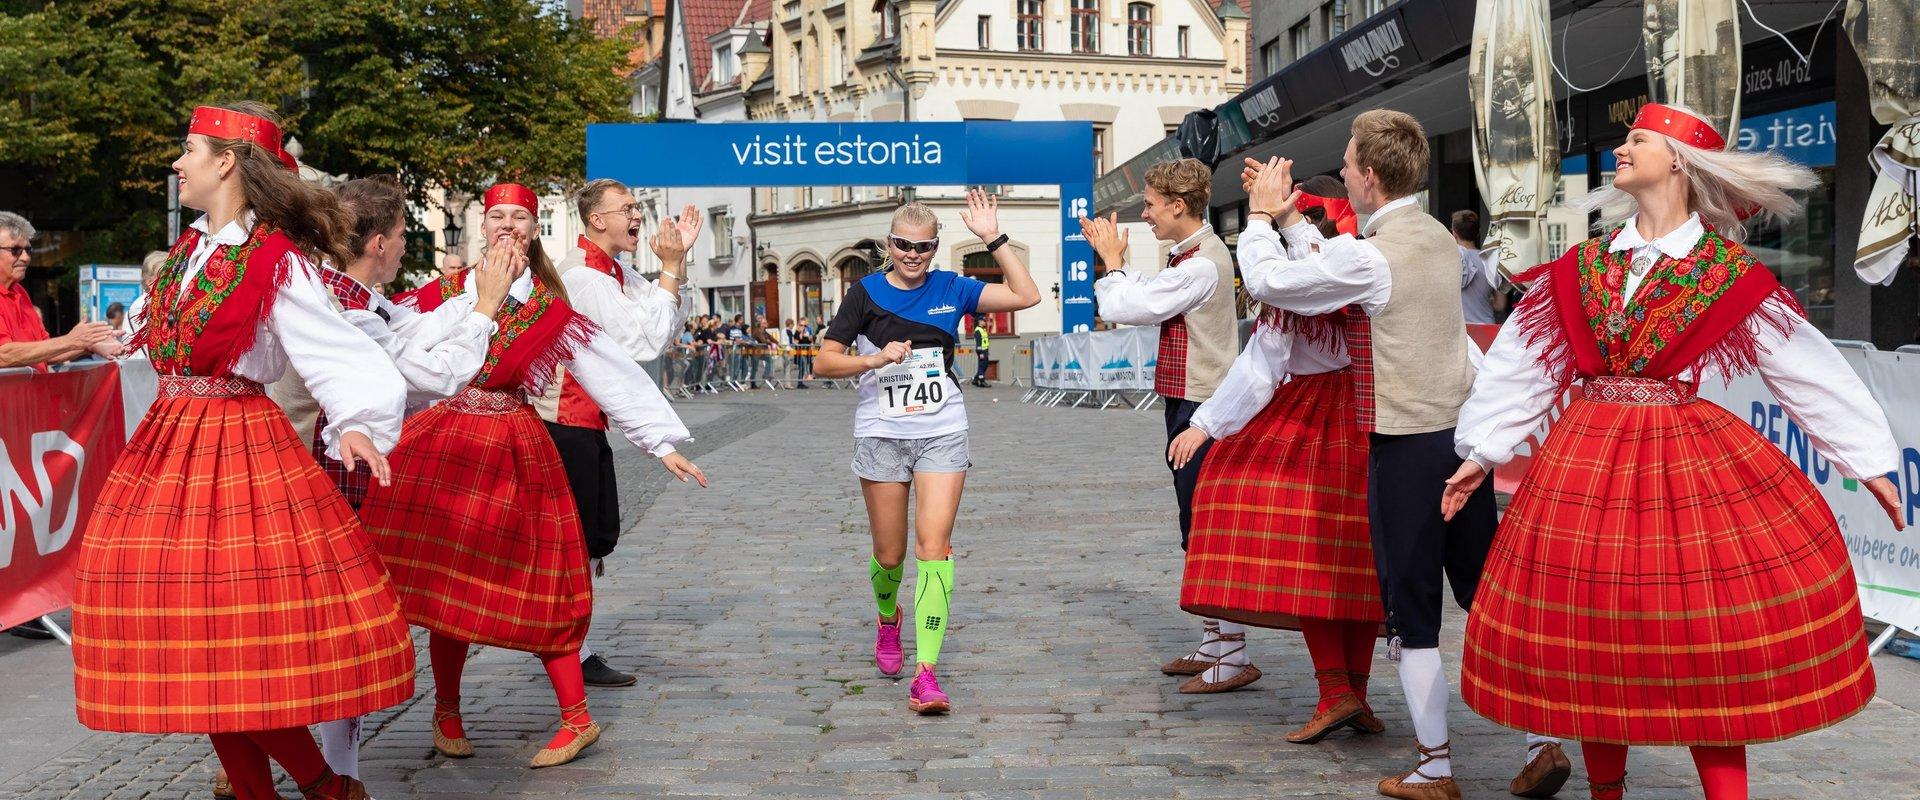 Beim Tallinner Marathon handelt es sich um eine internationale Sportveranstaltung mit der höchsten Teilnehmerzahl in Estland. Zum Programm vom Tallinn